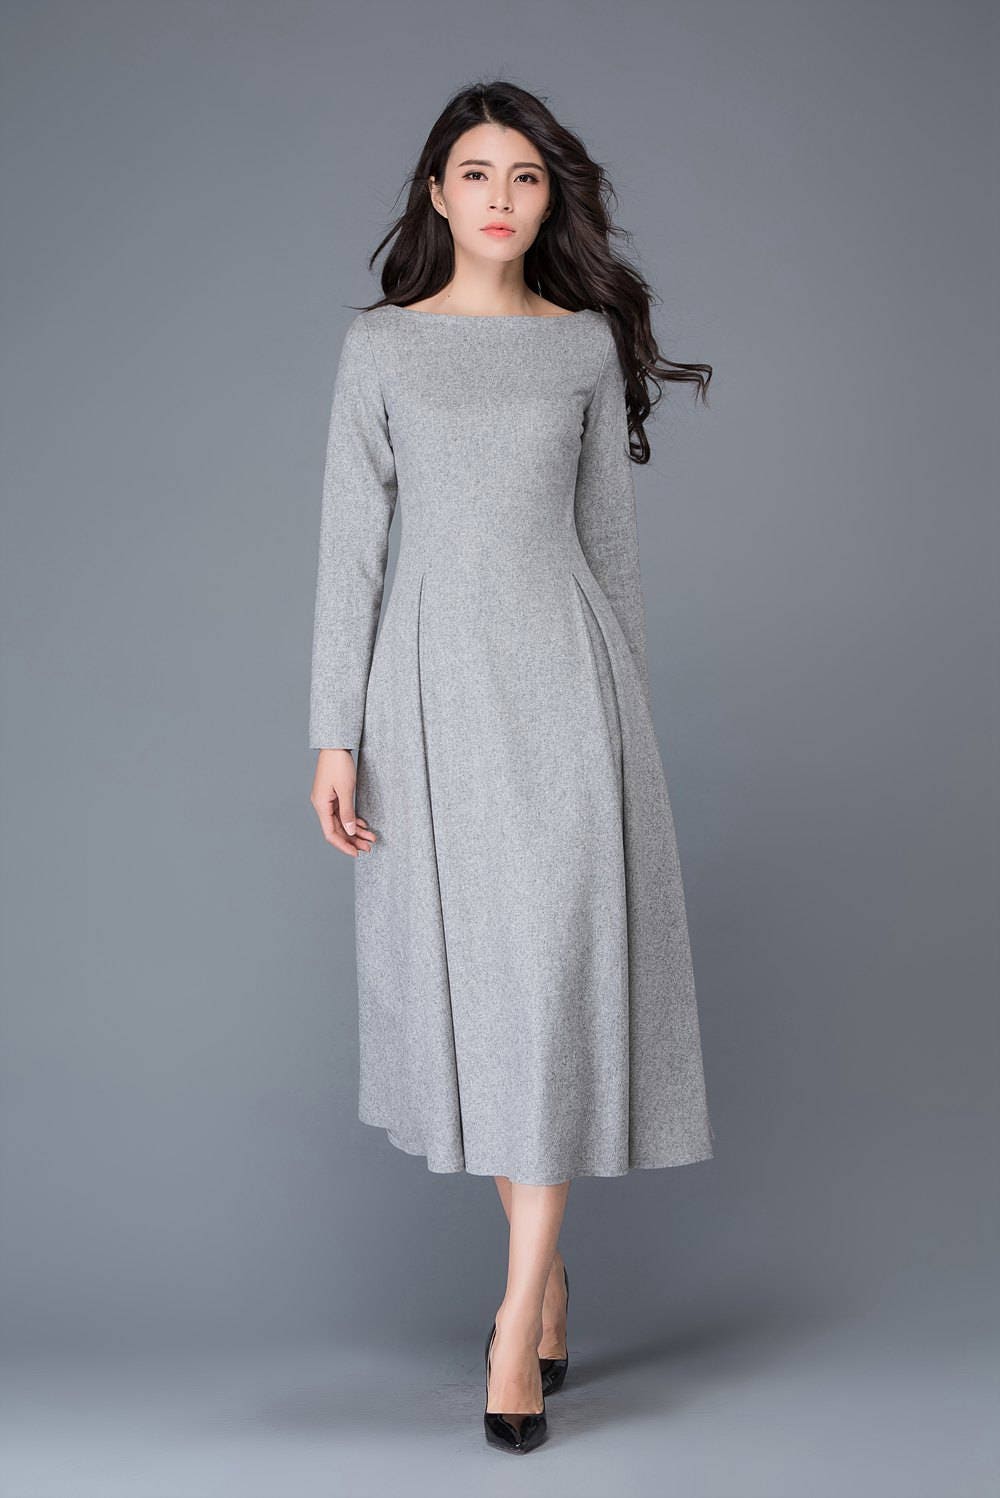 Wool dress winter dress gray wool dress boat neck wool | Etsy